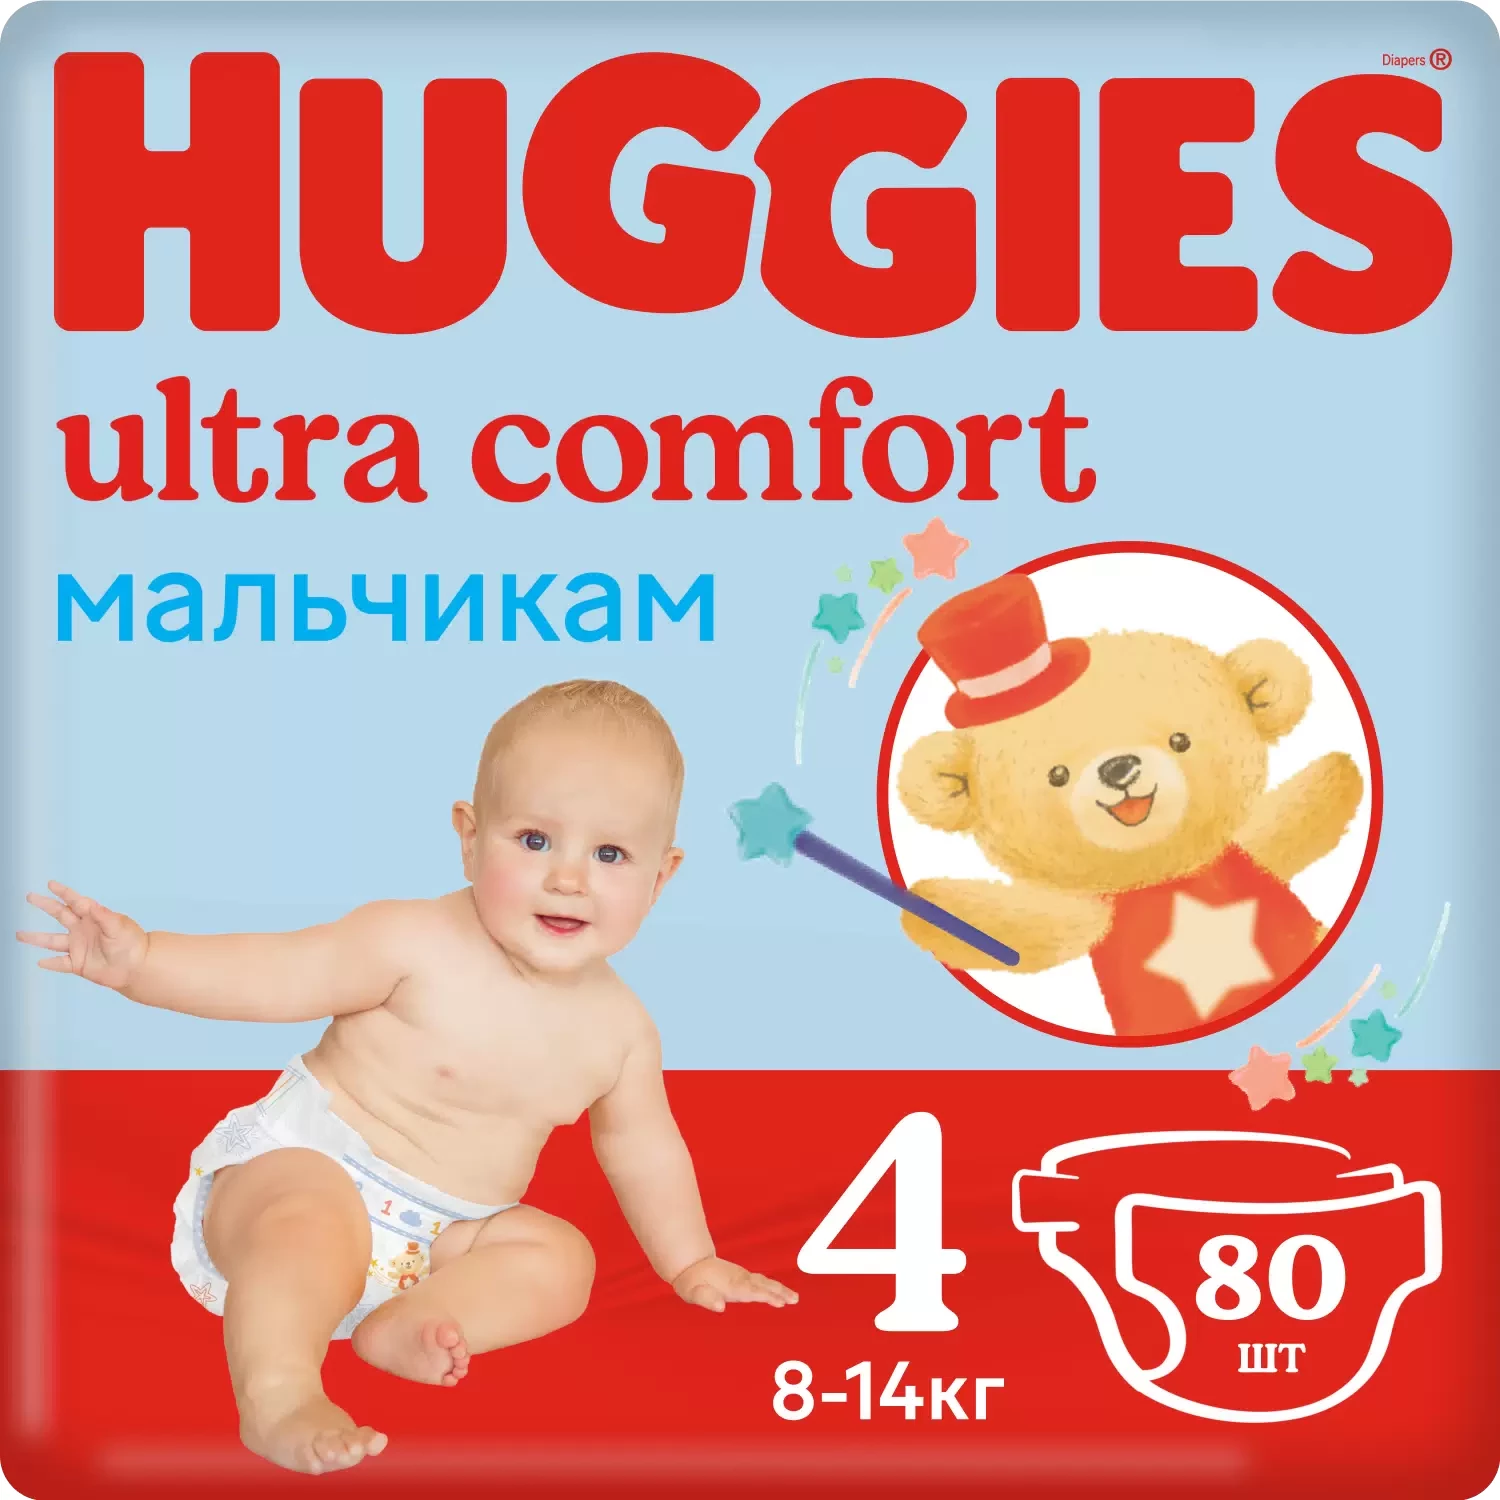 Օրիգինալ Huggies ultra comfort աղջիկ և տղա 4 80 հատ 8-14 կգ